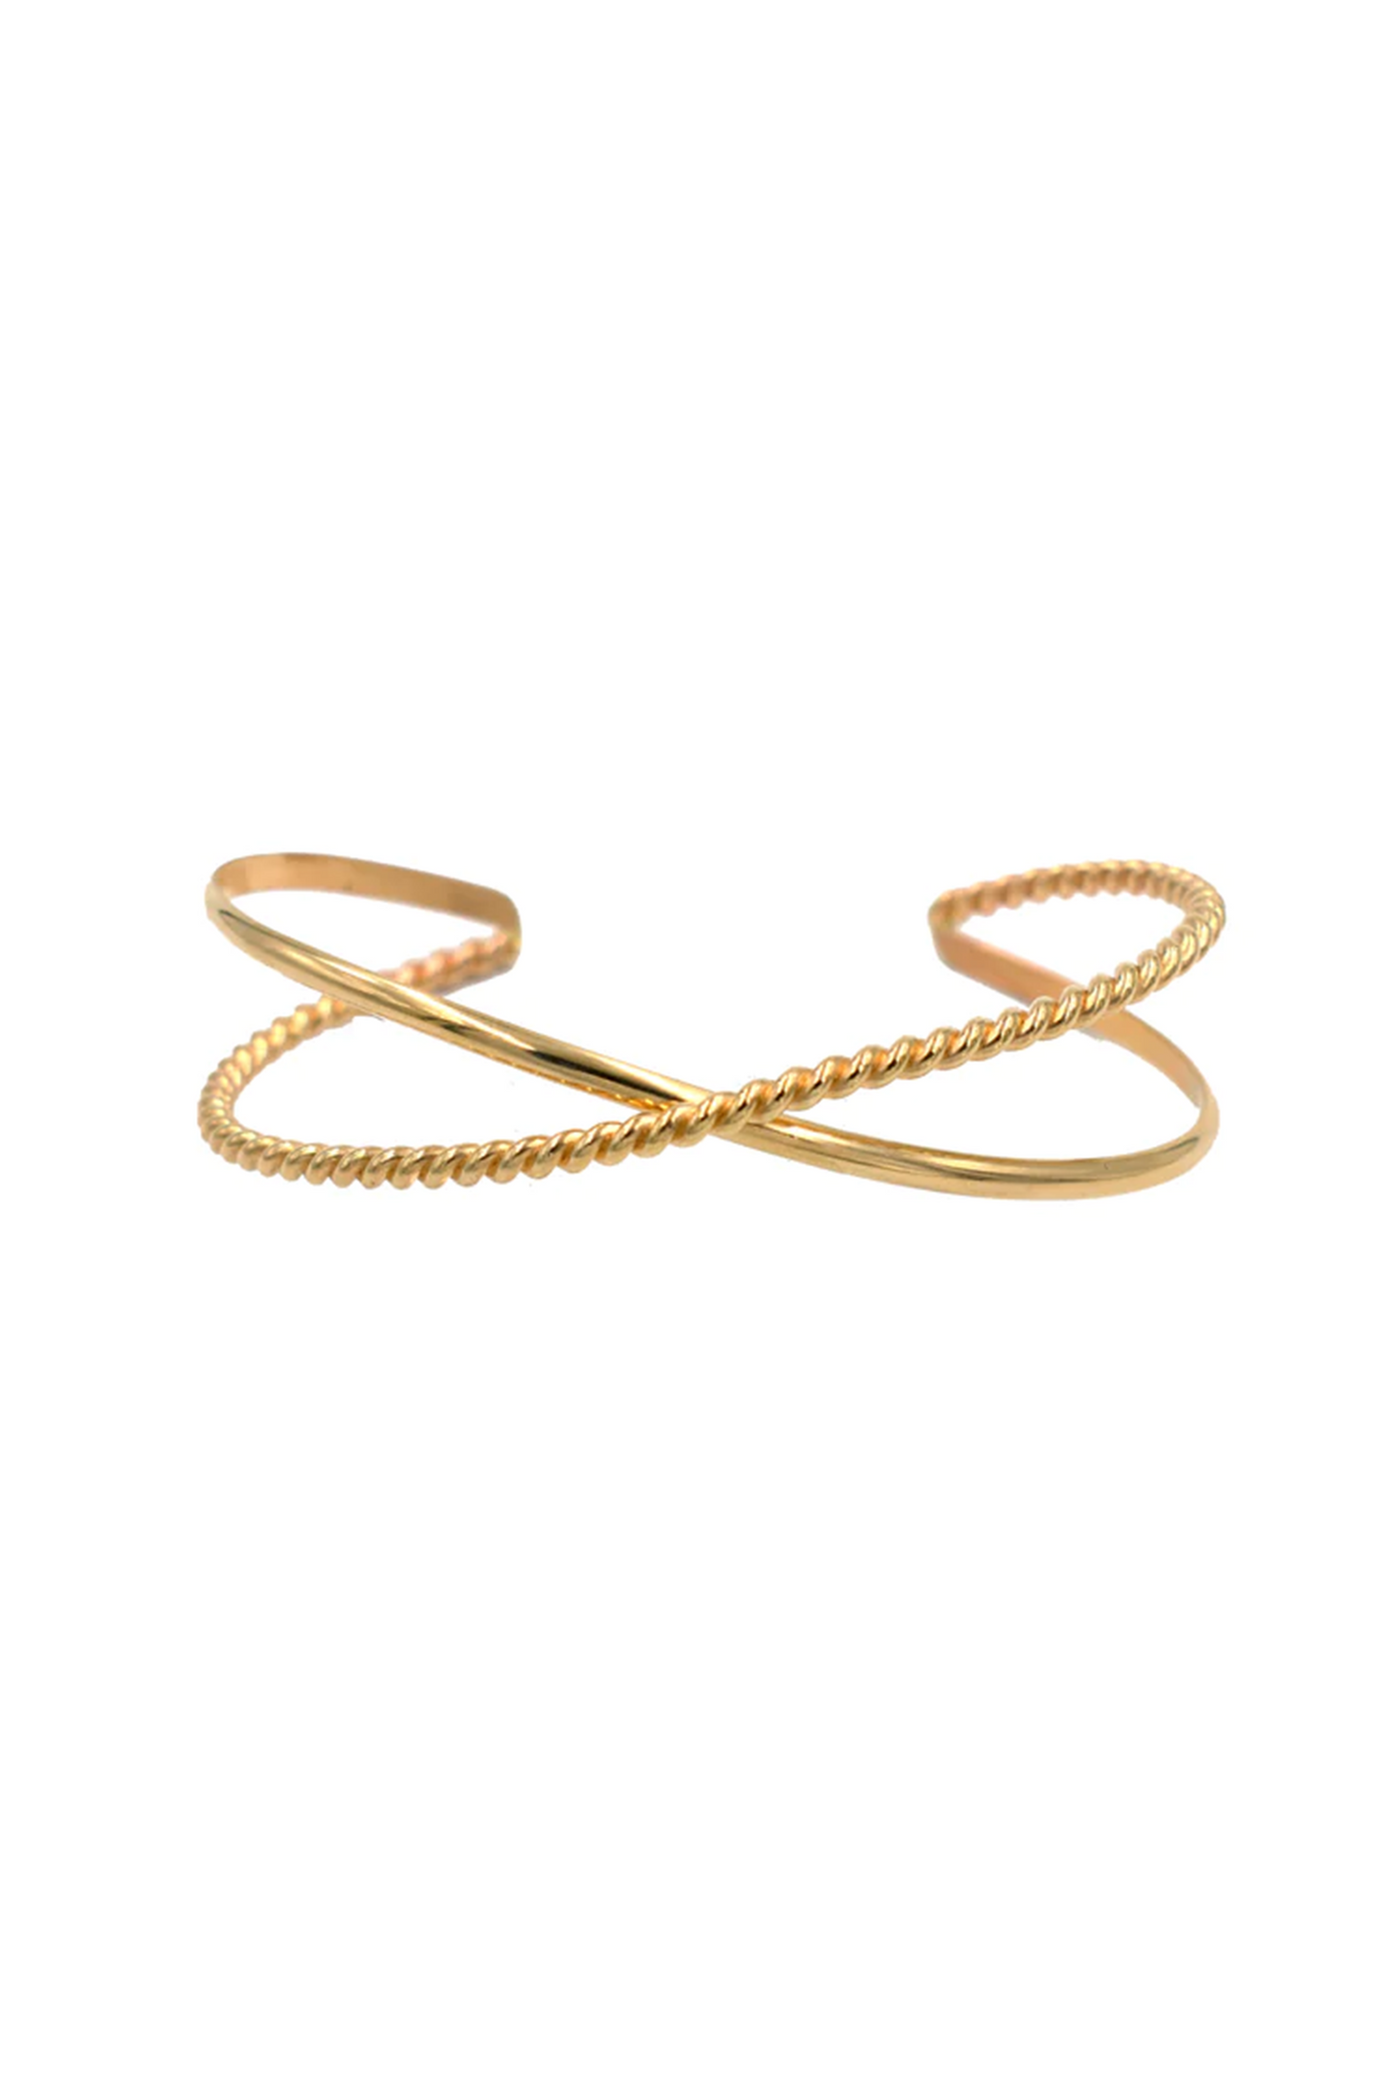 Paradigm Designs: Gold Filled Rope X Cuff